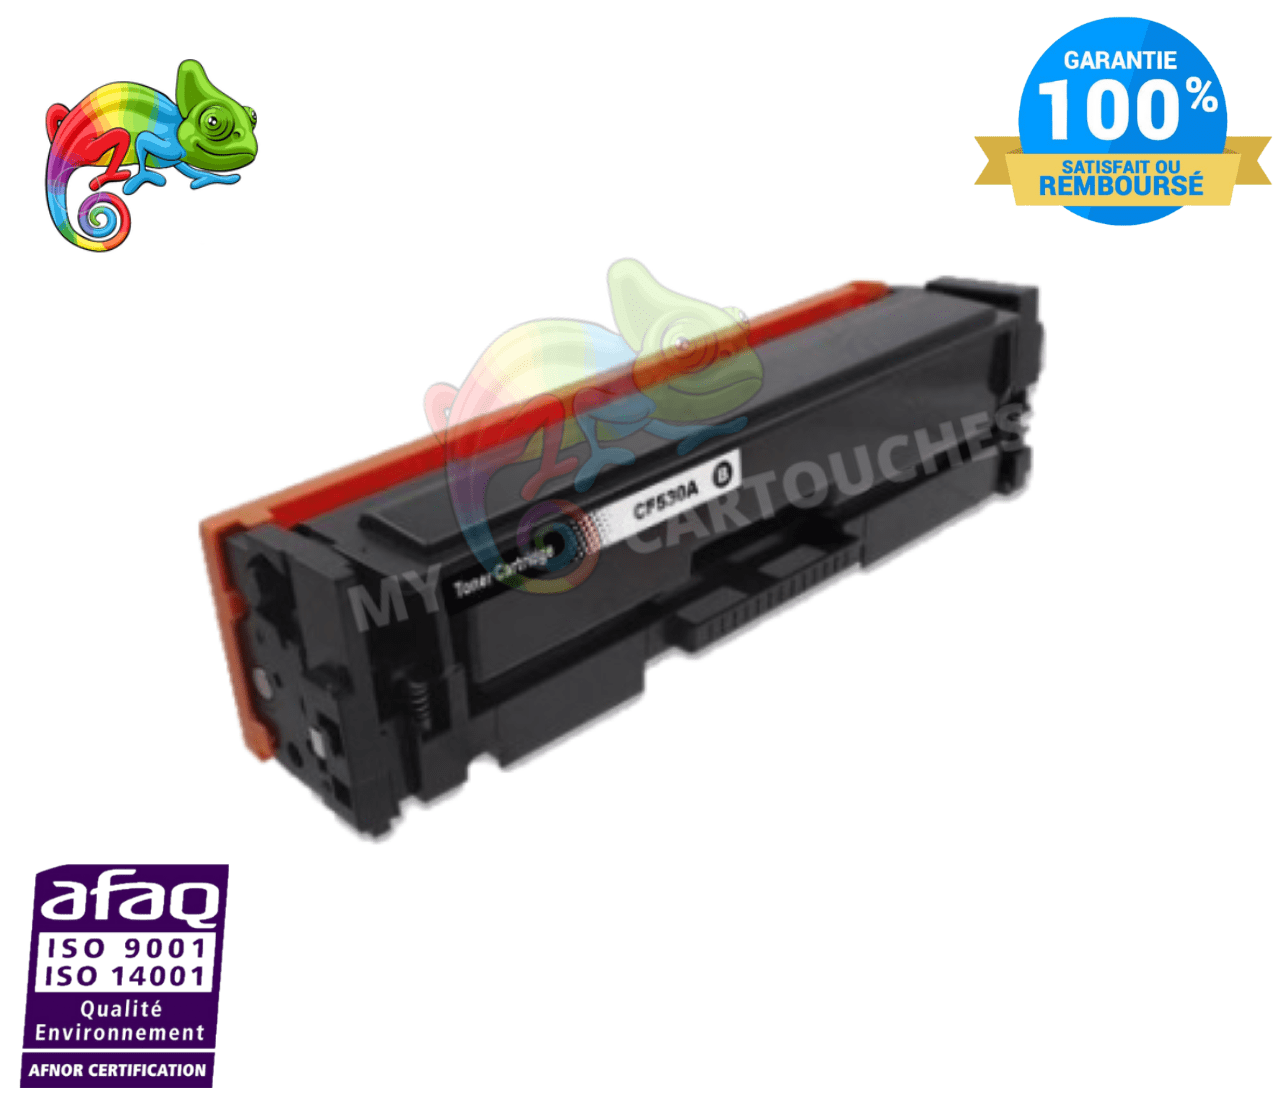 mycartouches Toner/Laser Black / 1100 / LHCF530A Toner  HP CF530A Black Compatible